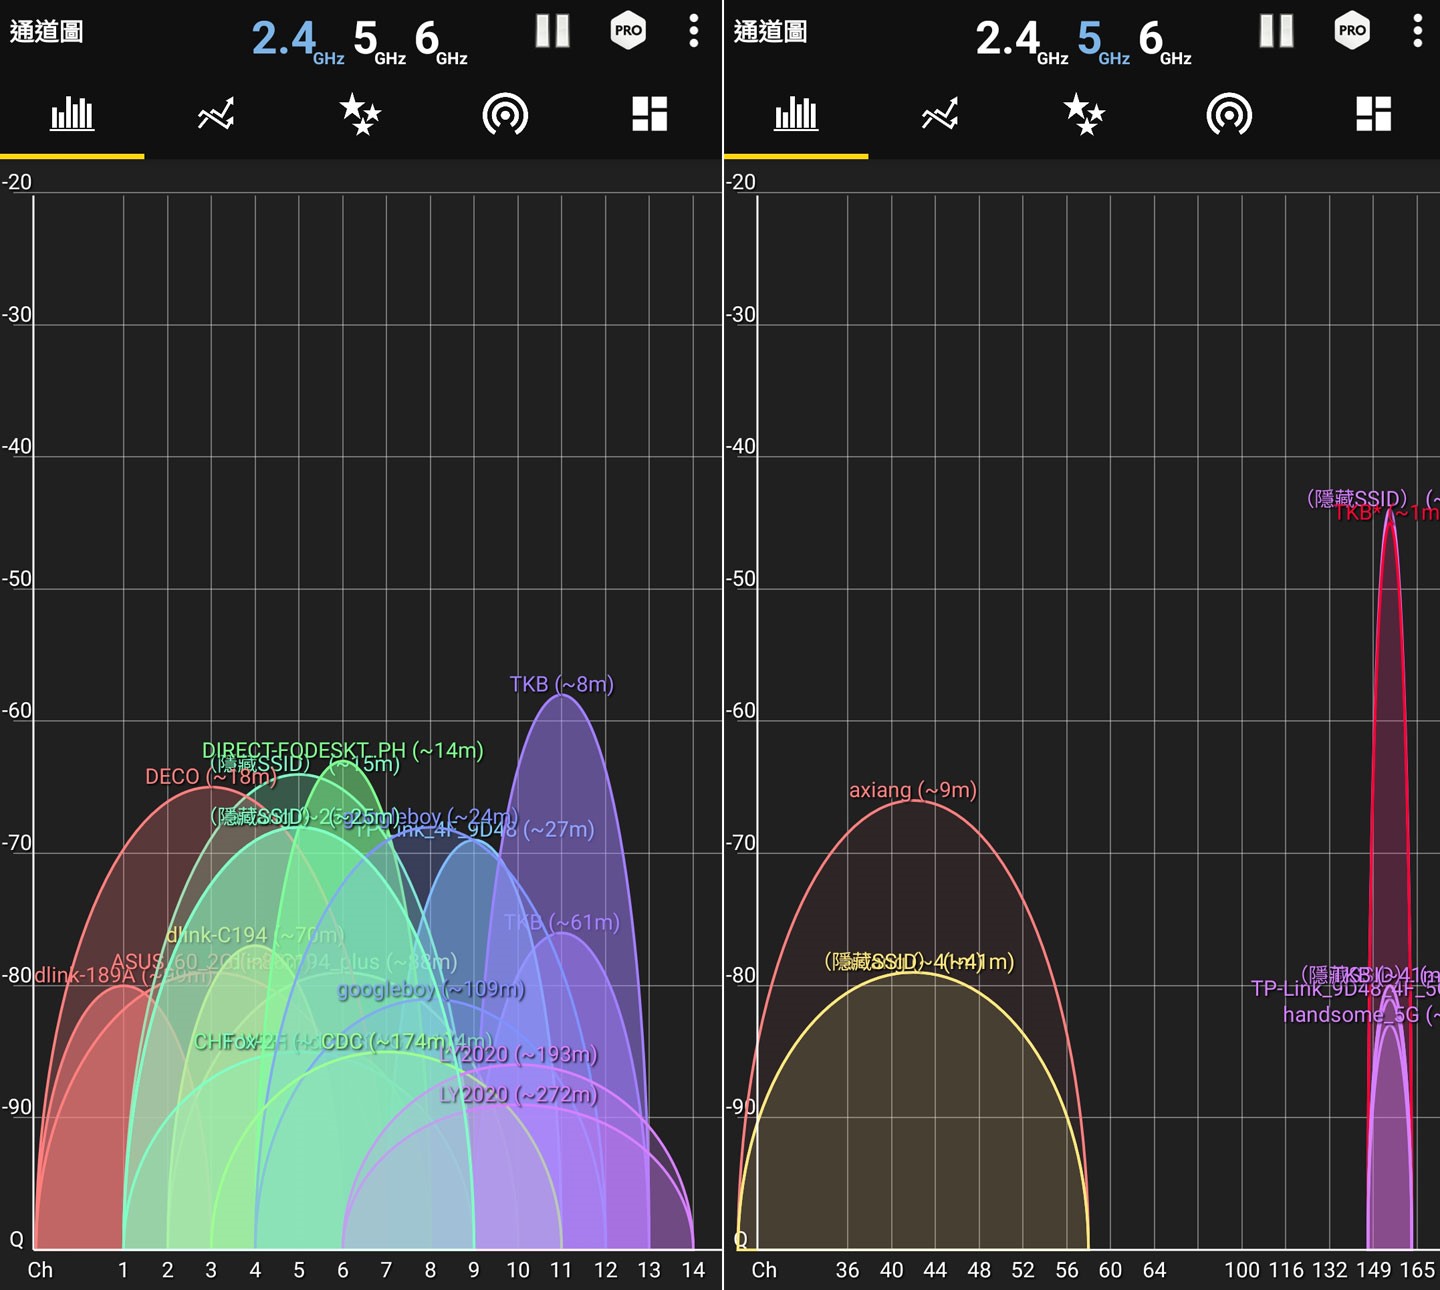 測速點 D 的收訊狀況，圖左為 2.4GHz 頻段，收訊品質約在 -58 dBm；圖右為 5 GHz 頻段，收訊品質約在 45 dBm。